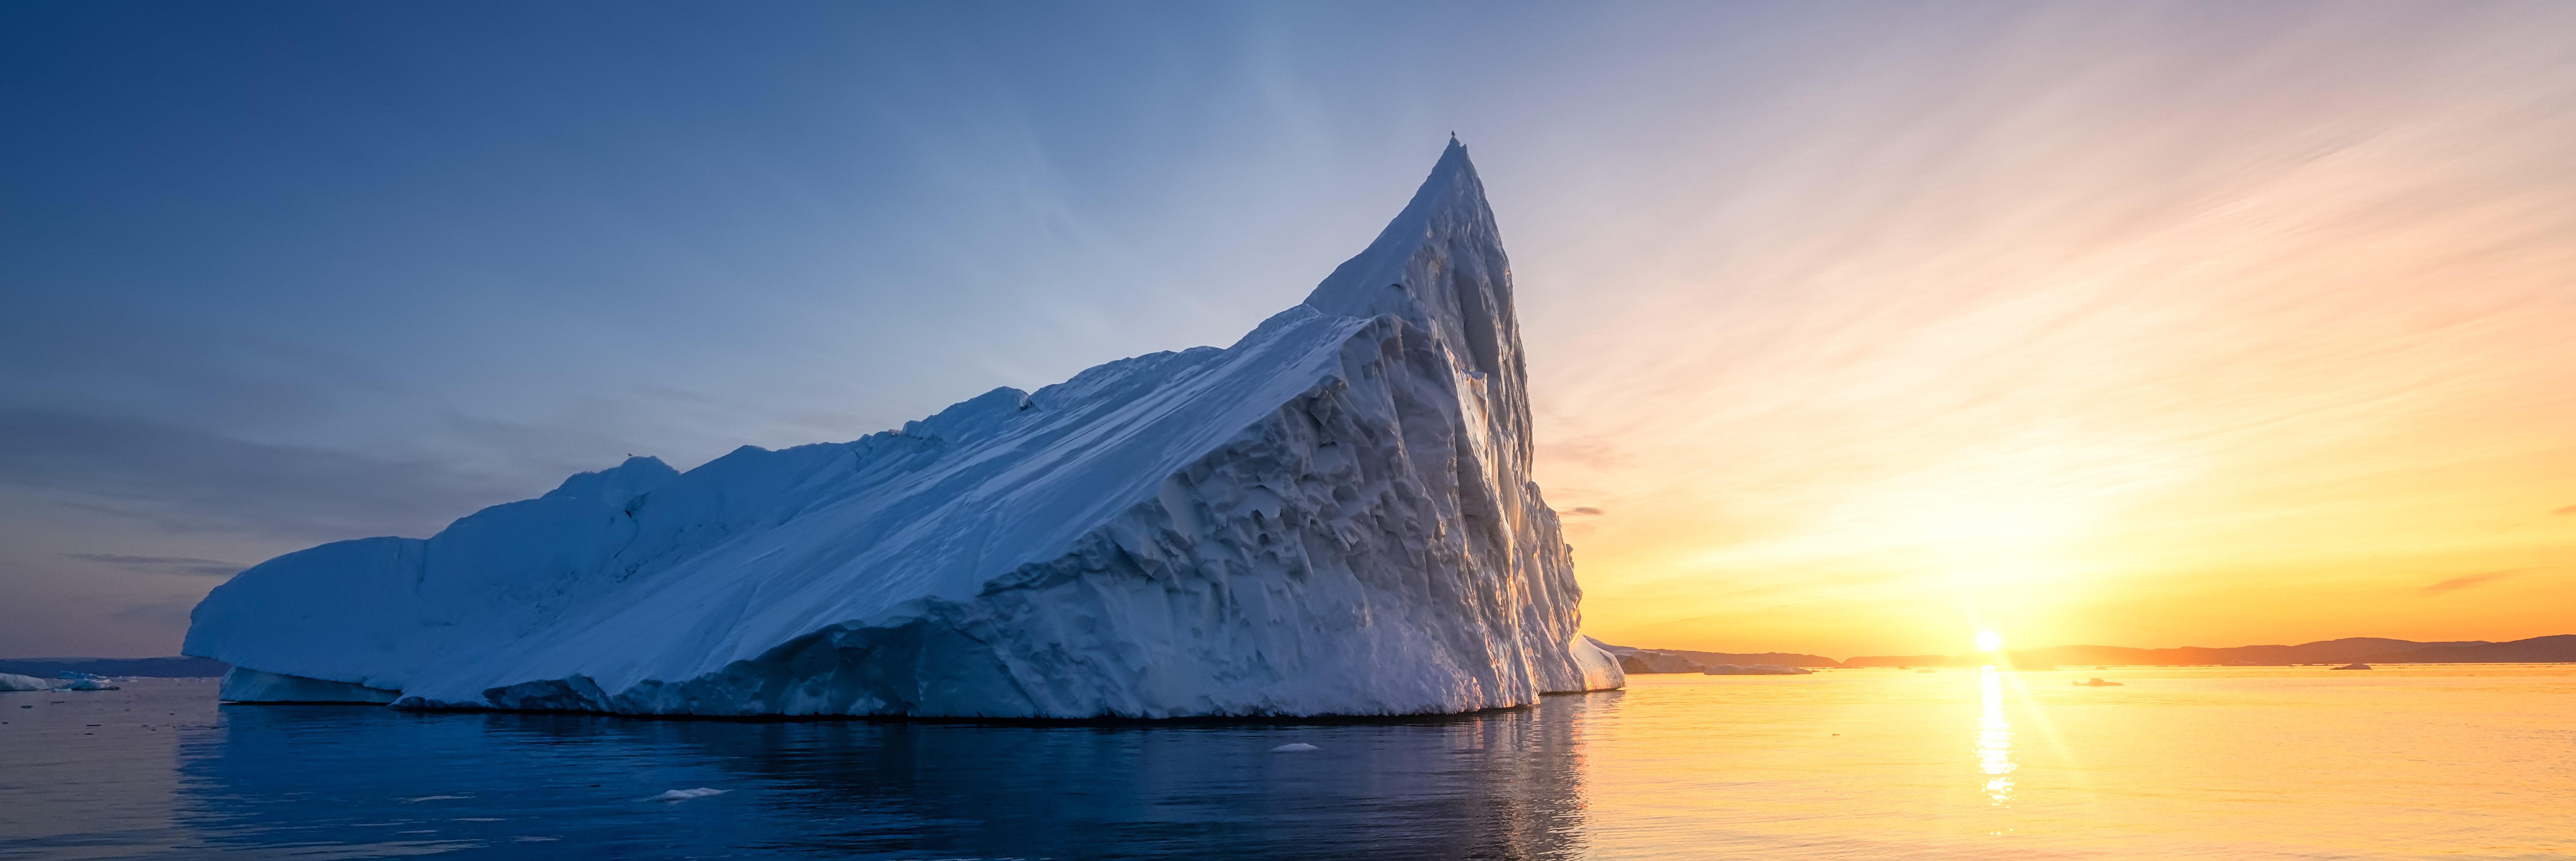 Eisberg im Meer, im Hintergrund ein Sonnenuntergang